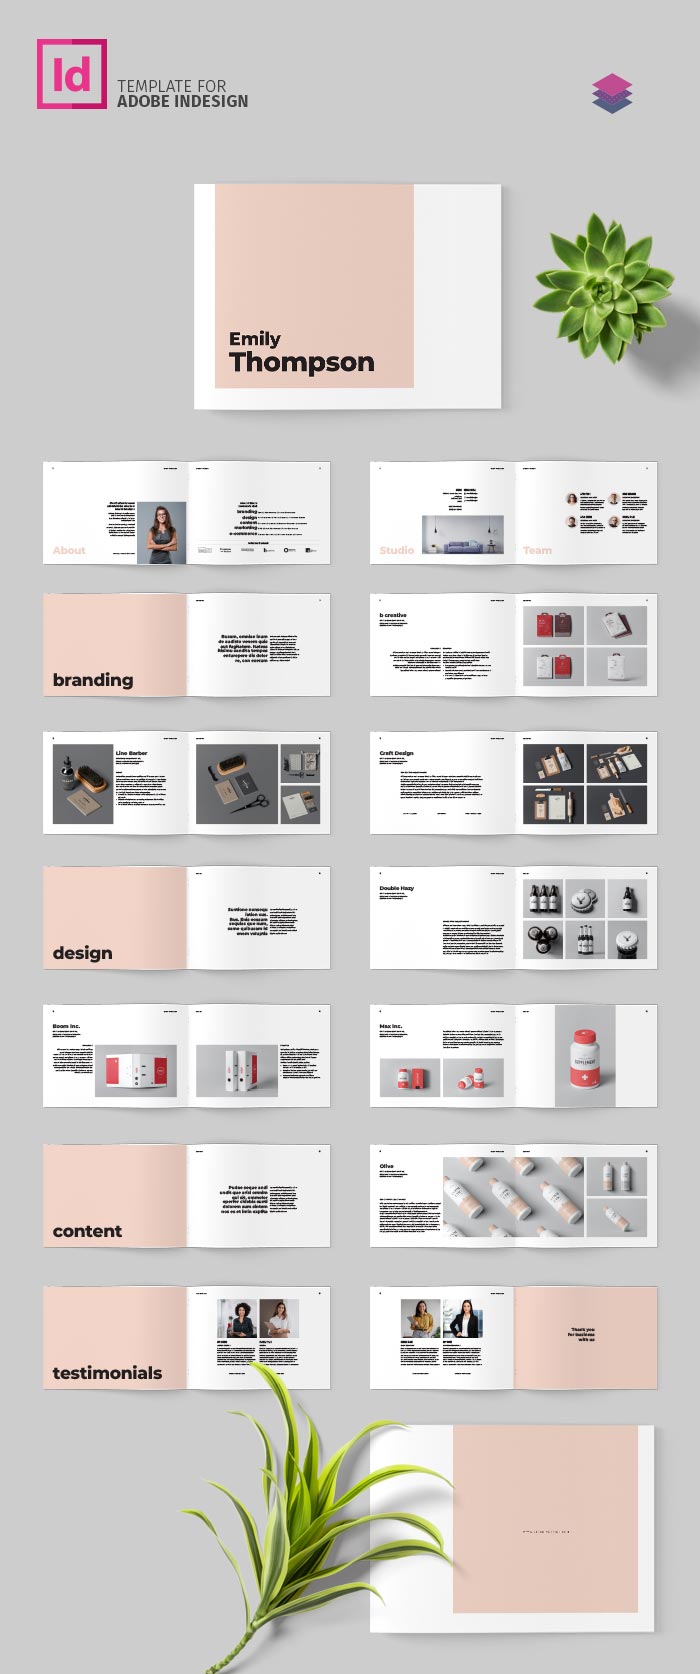 Portfolio Template in Adobe InDesign